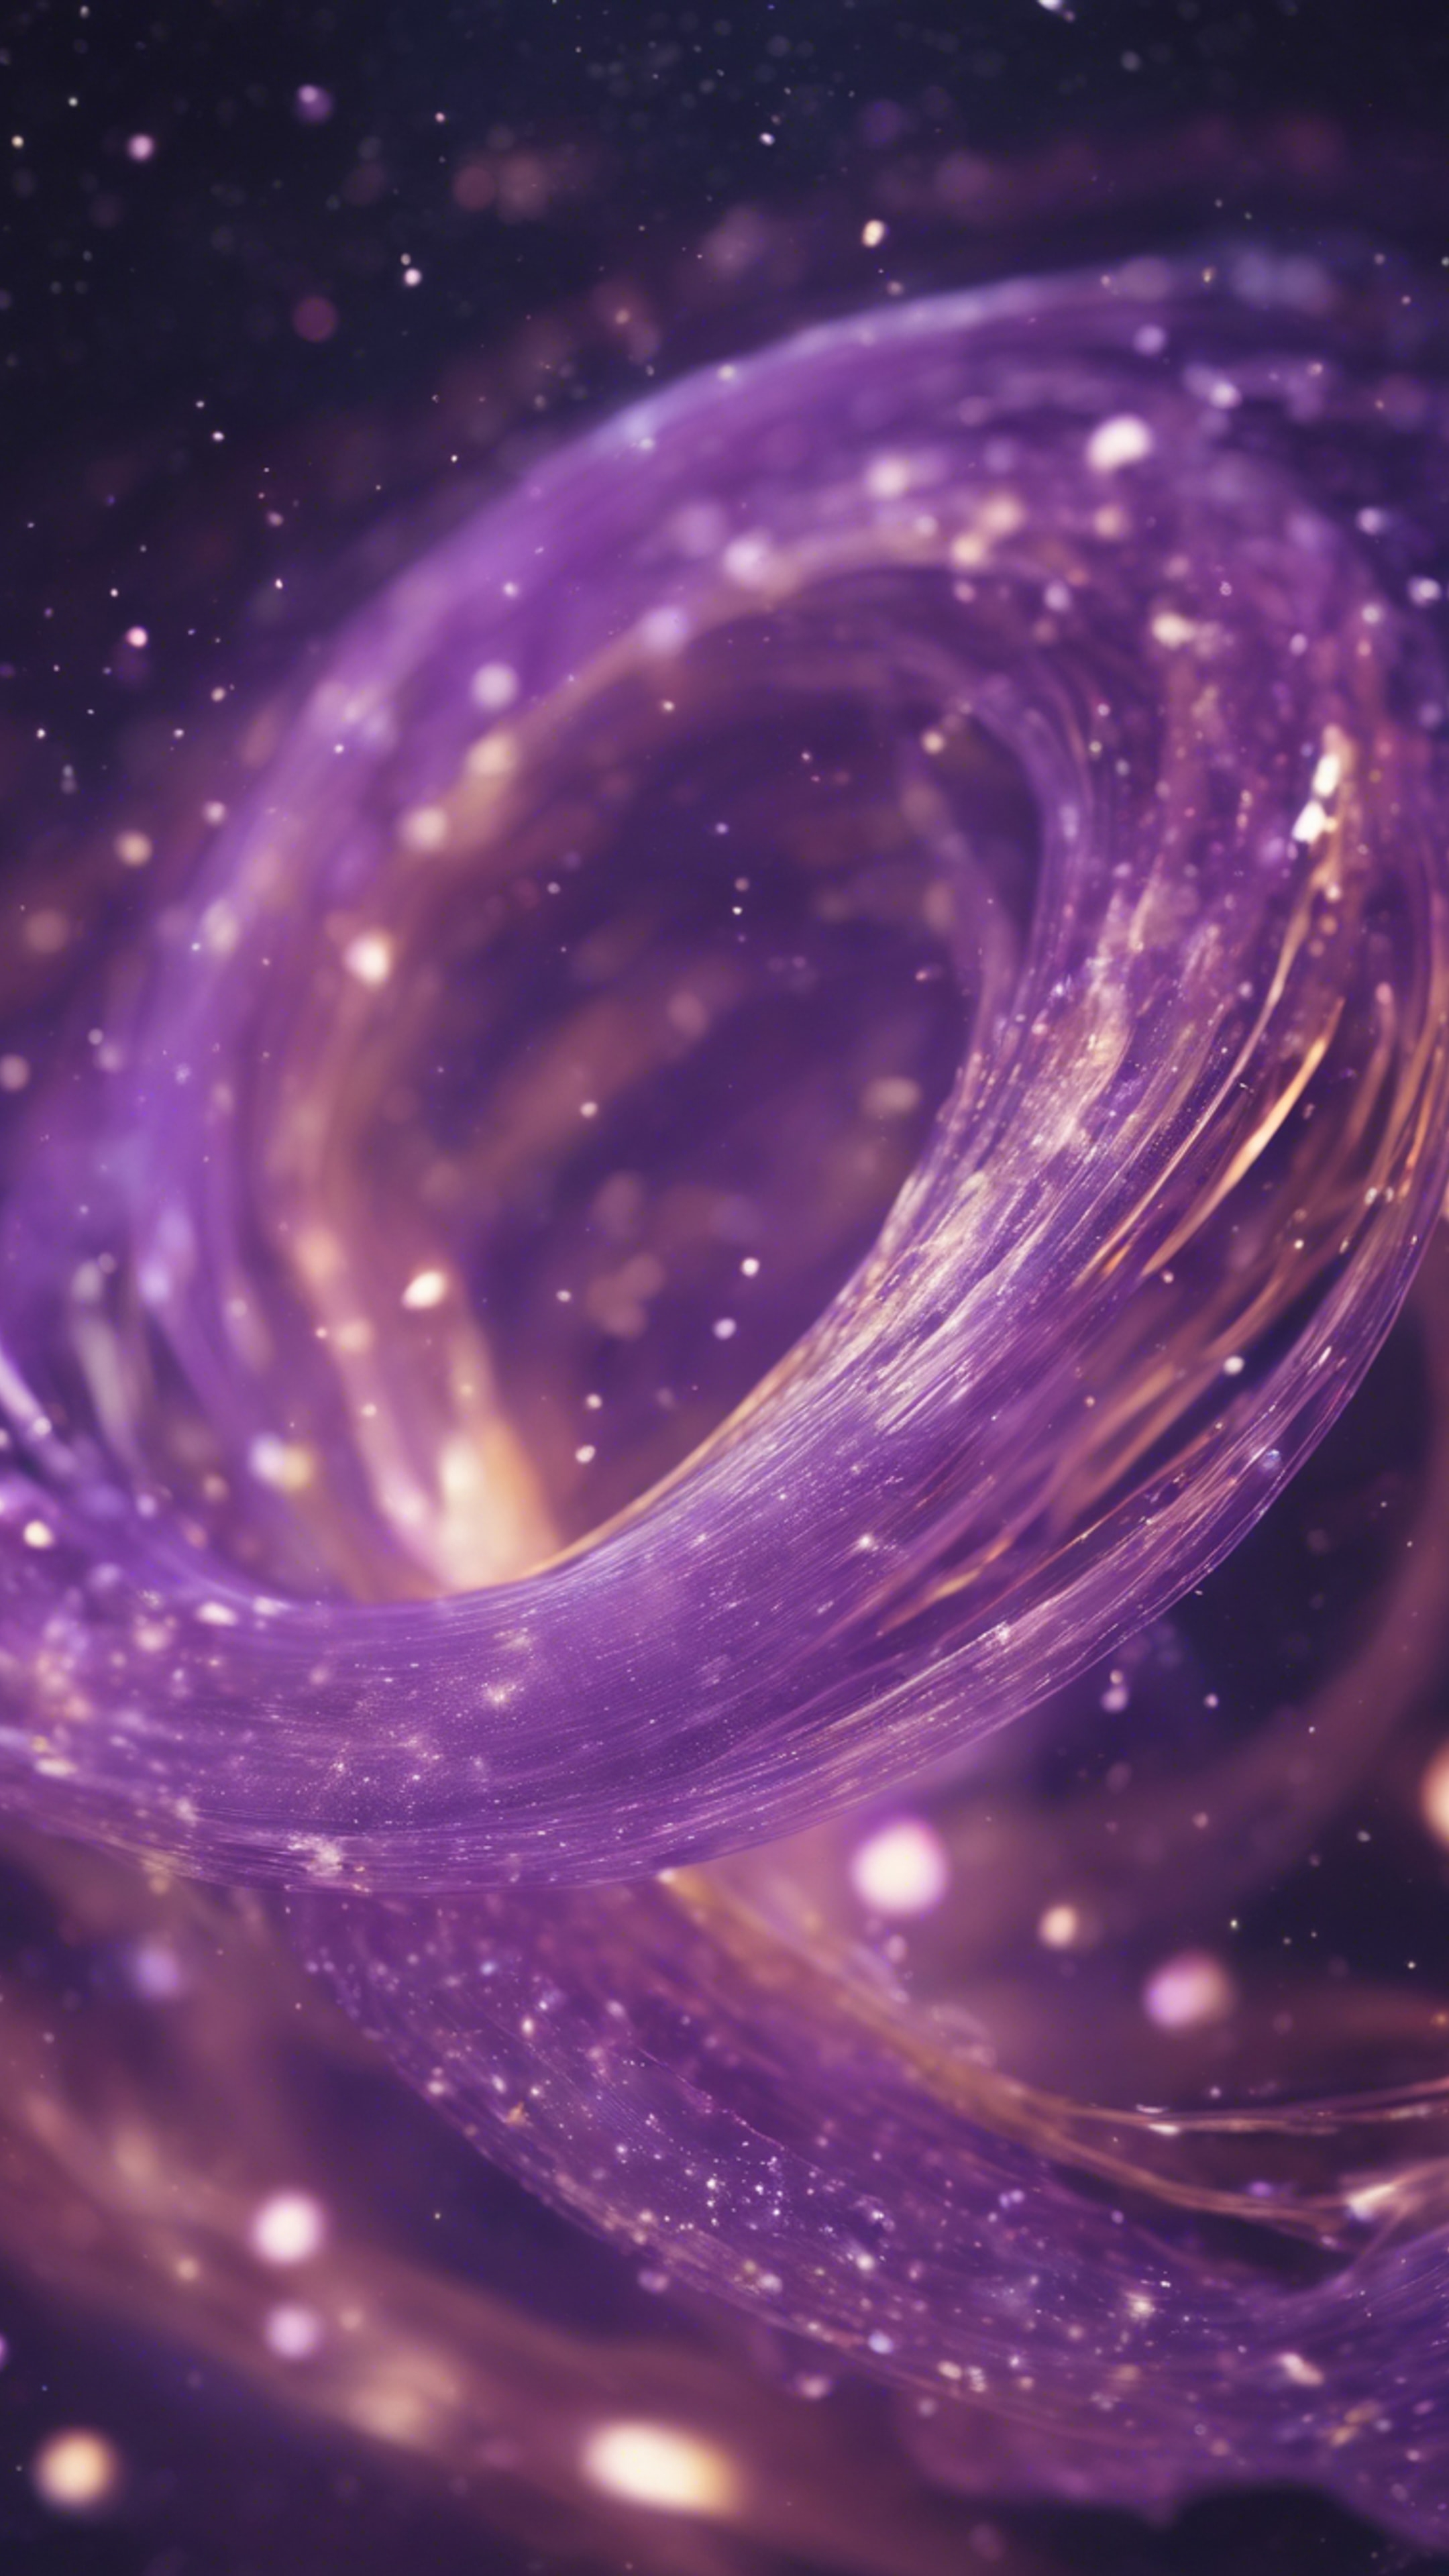 Spectral swirls of light purple shades dancing in cosmic space. Wallpaper[e2f67fe74b19465780d0]